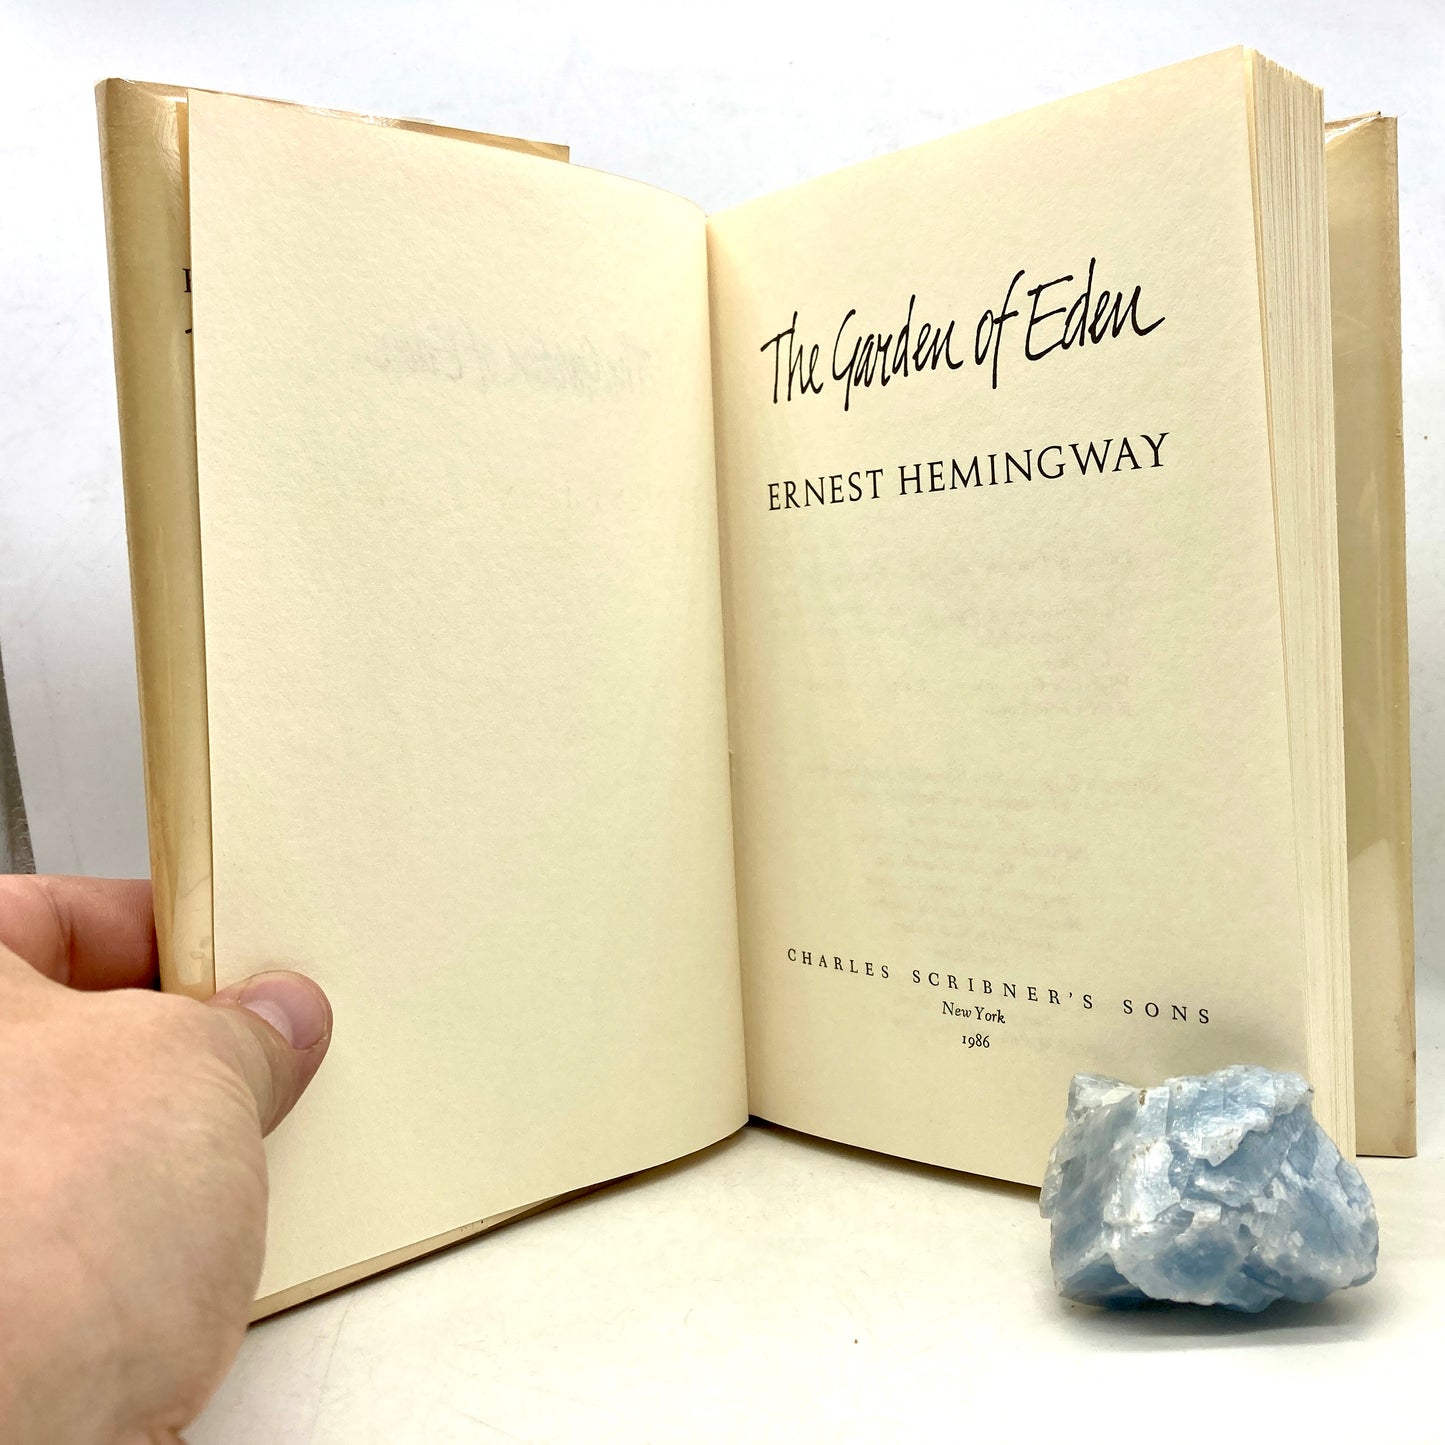 HEMINGWAY, Ernest "The Garden of Eden" [Scribner's, 1986] 1st Edition